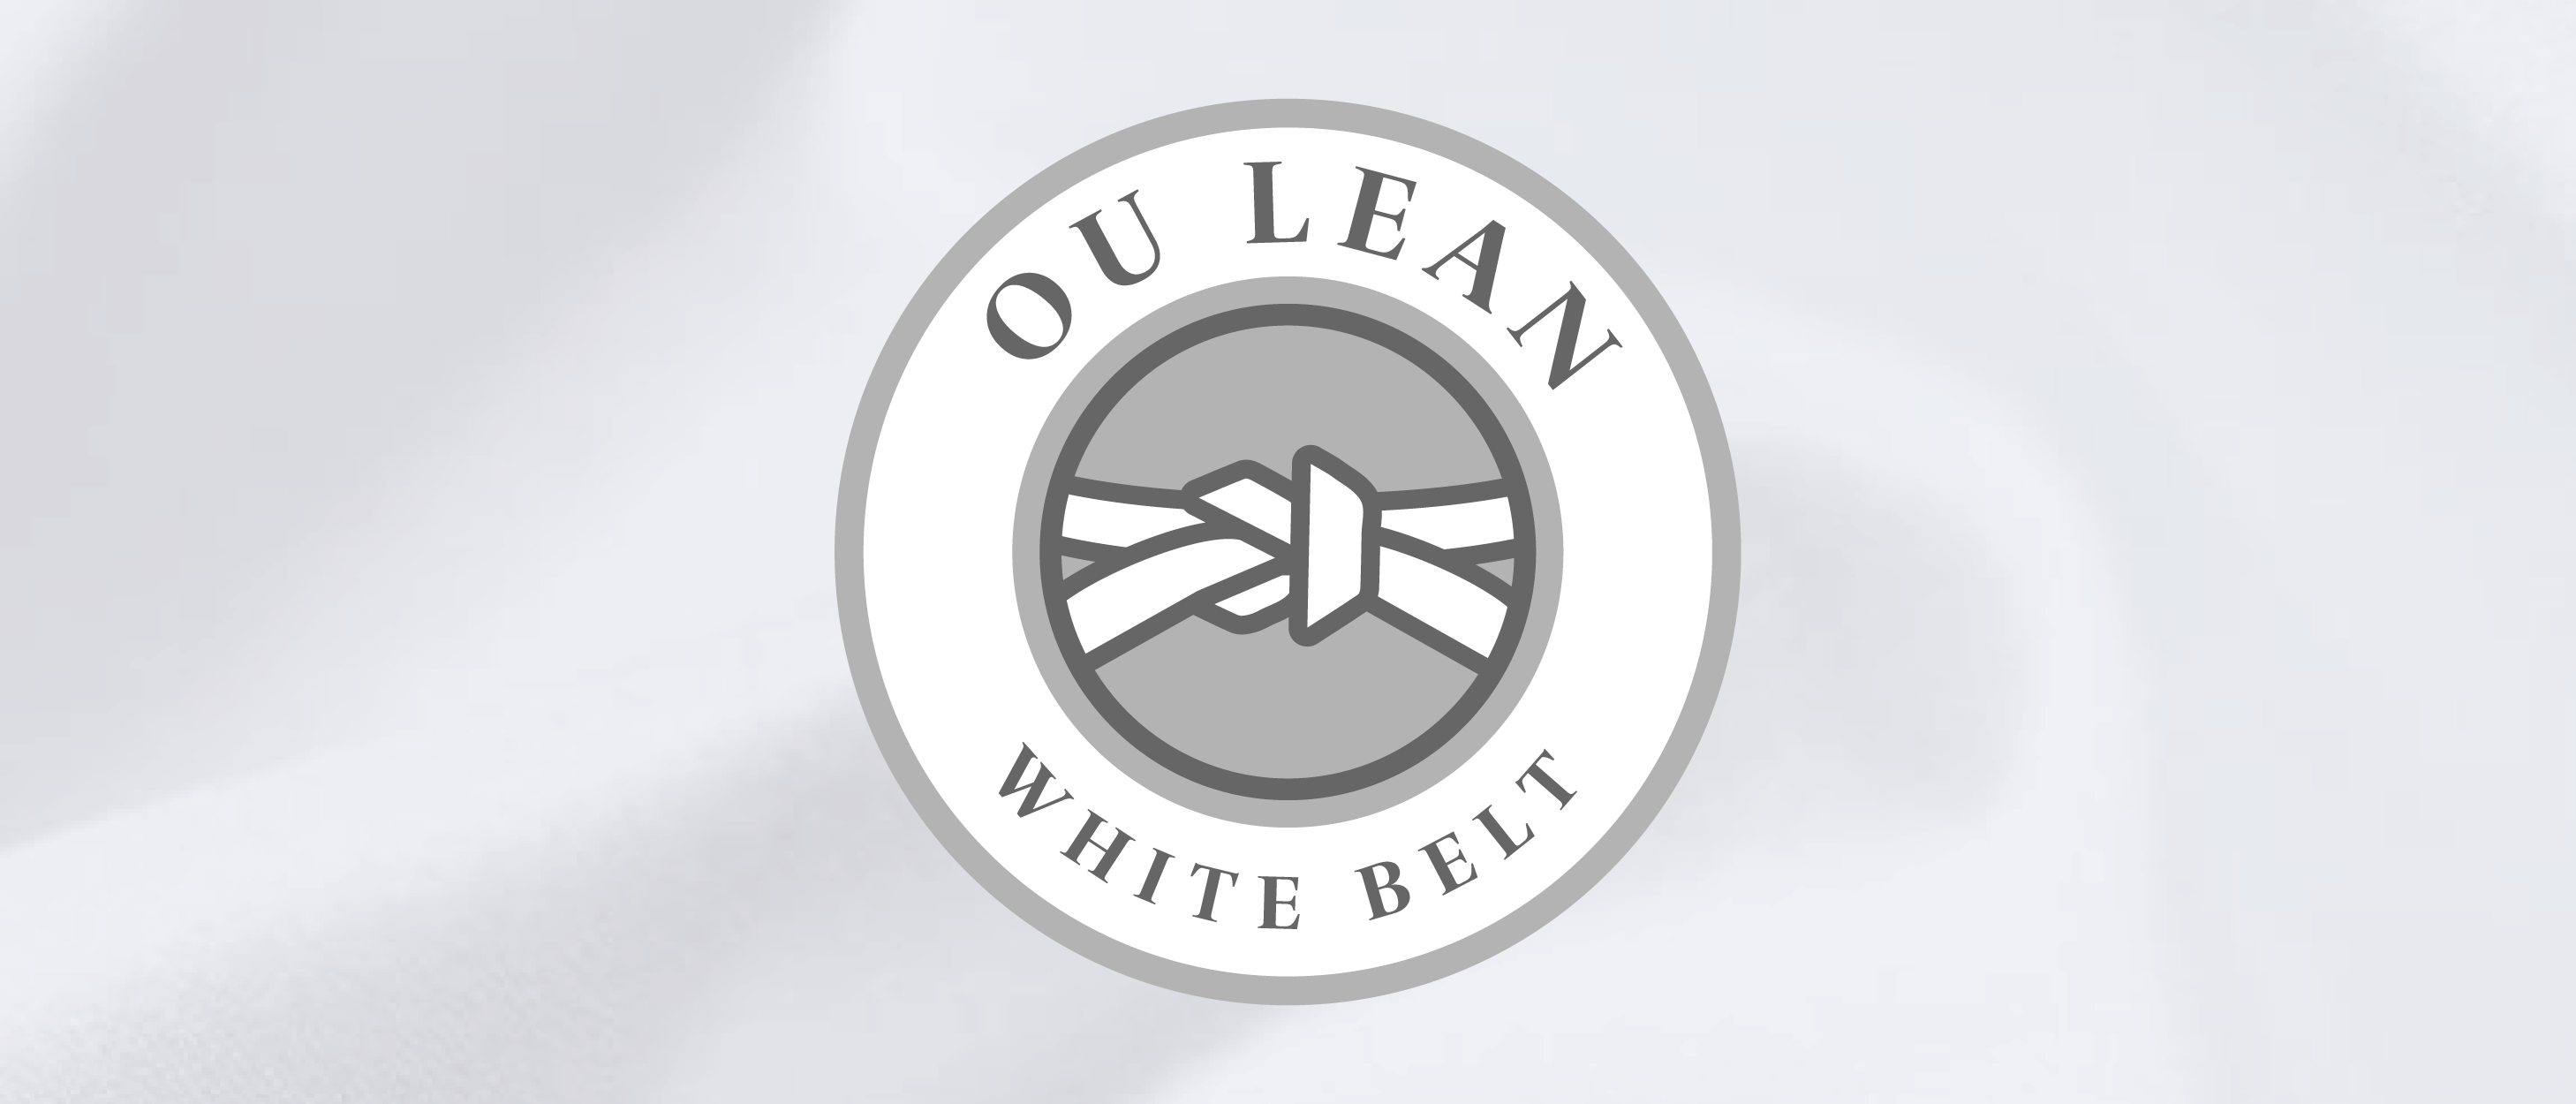 OU Lean White Belt